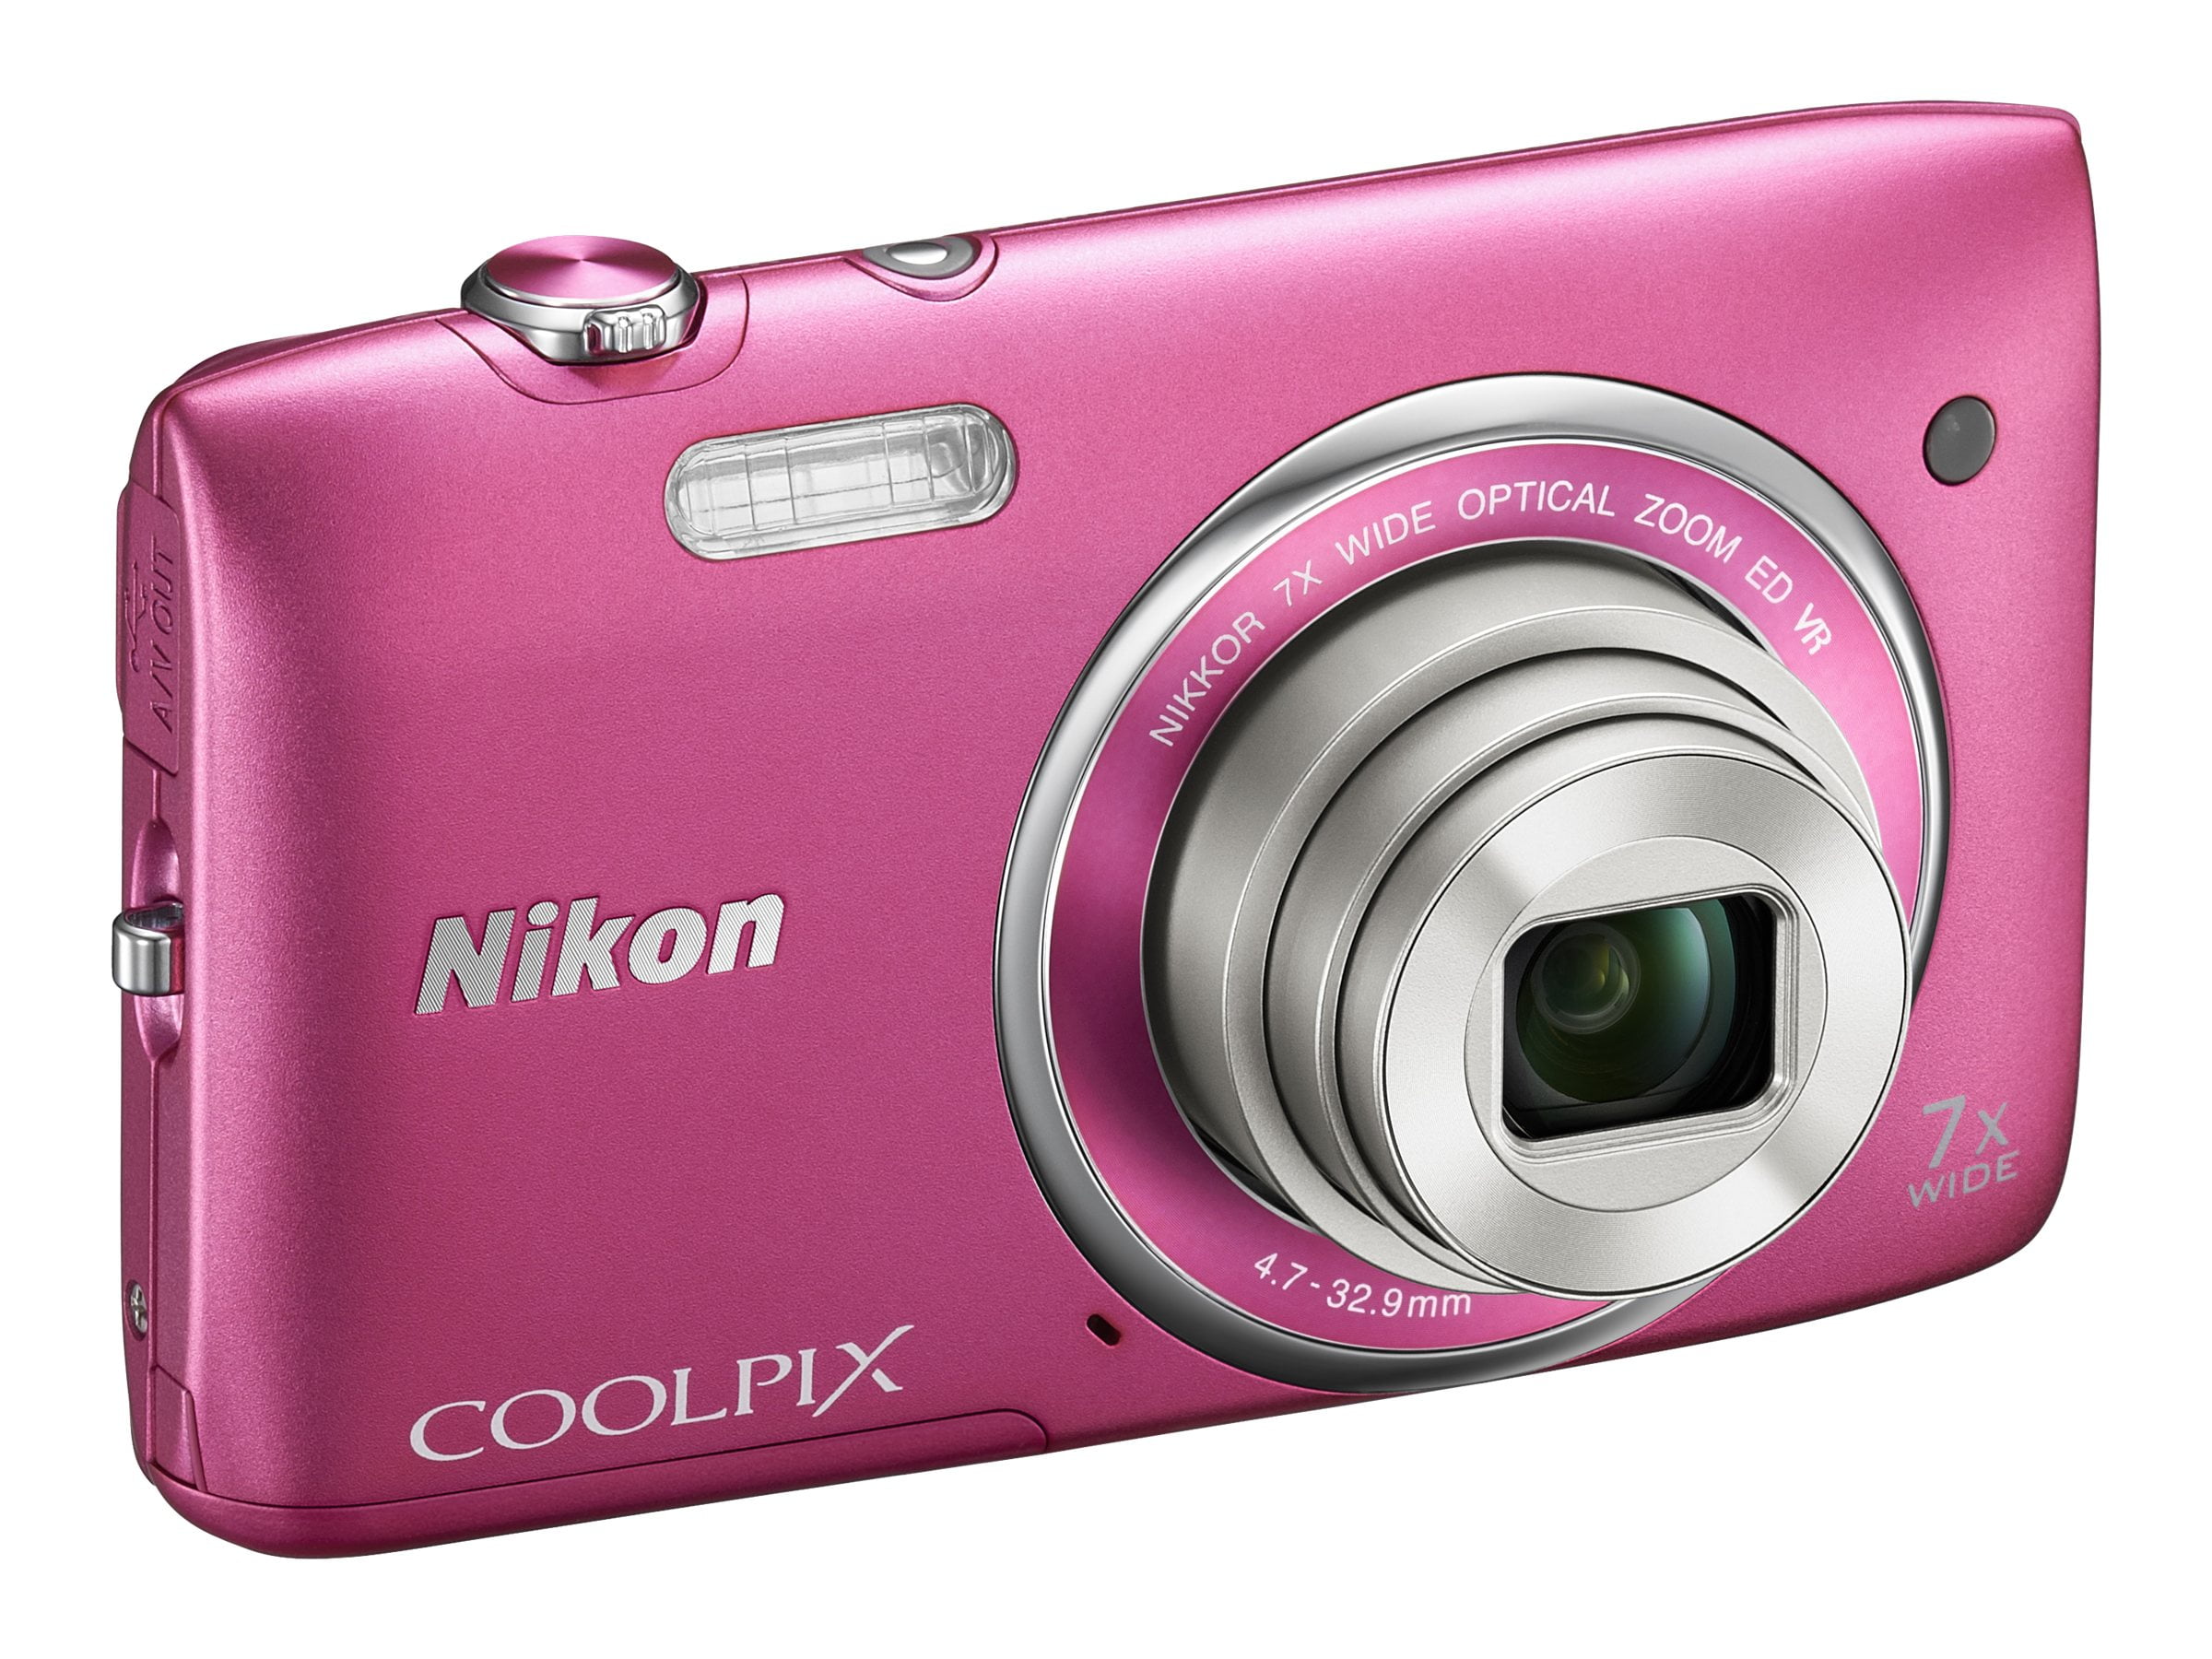 Nikon Coolpix S3600 20.1 Megapixel Compact Camera, Pink - Walmart.com